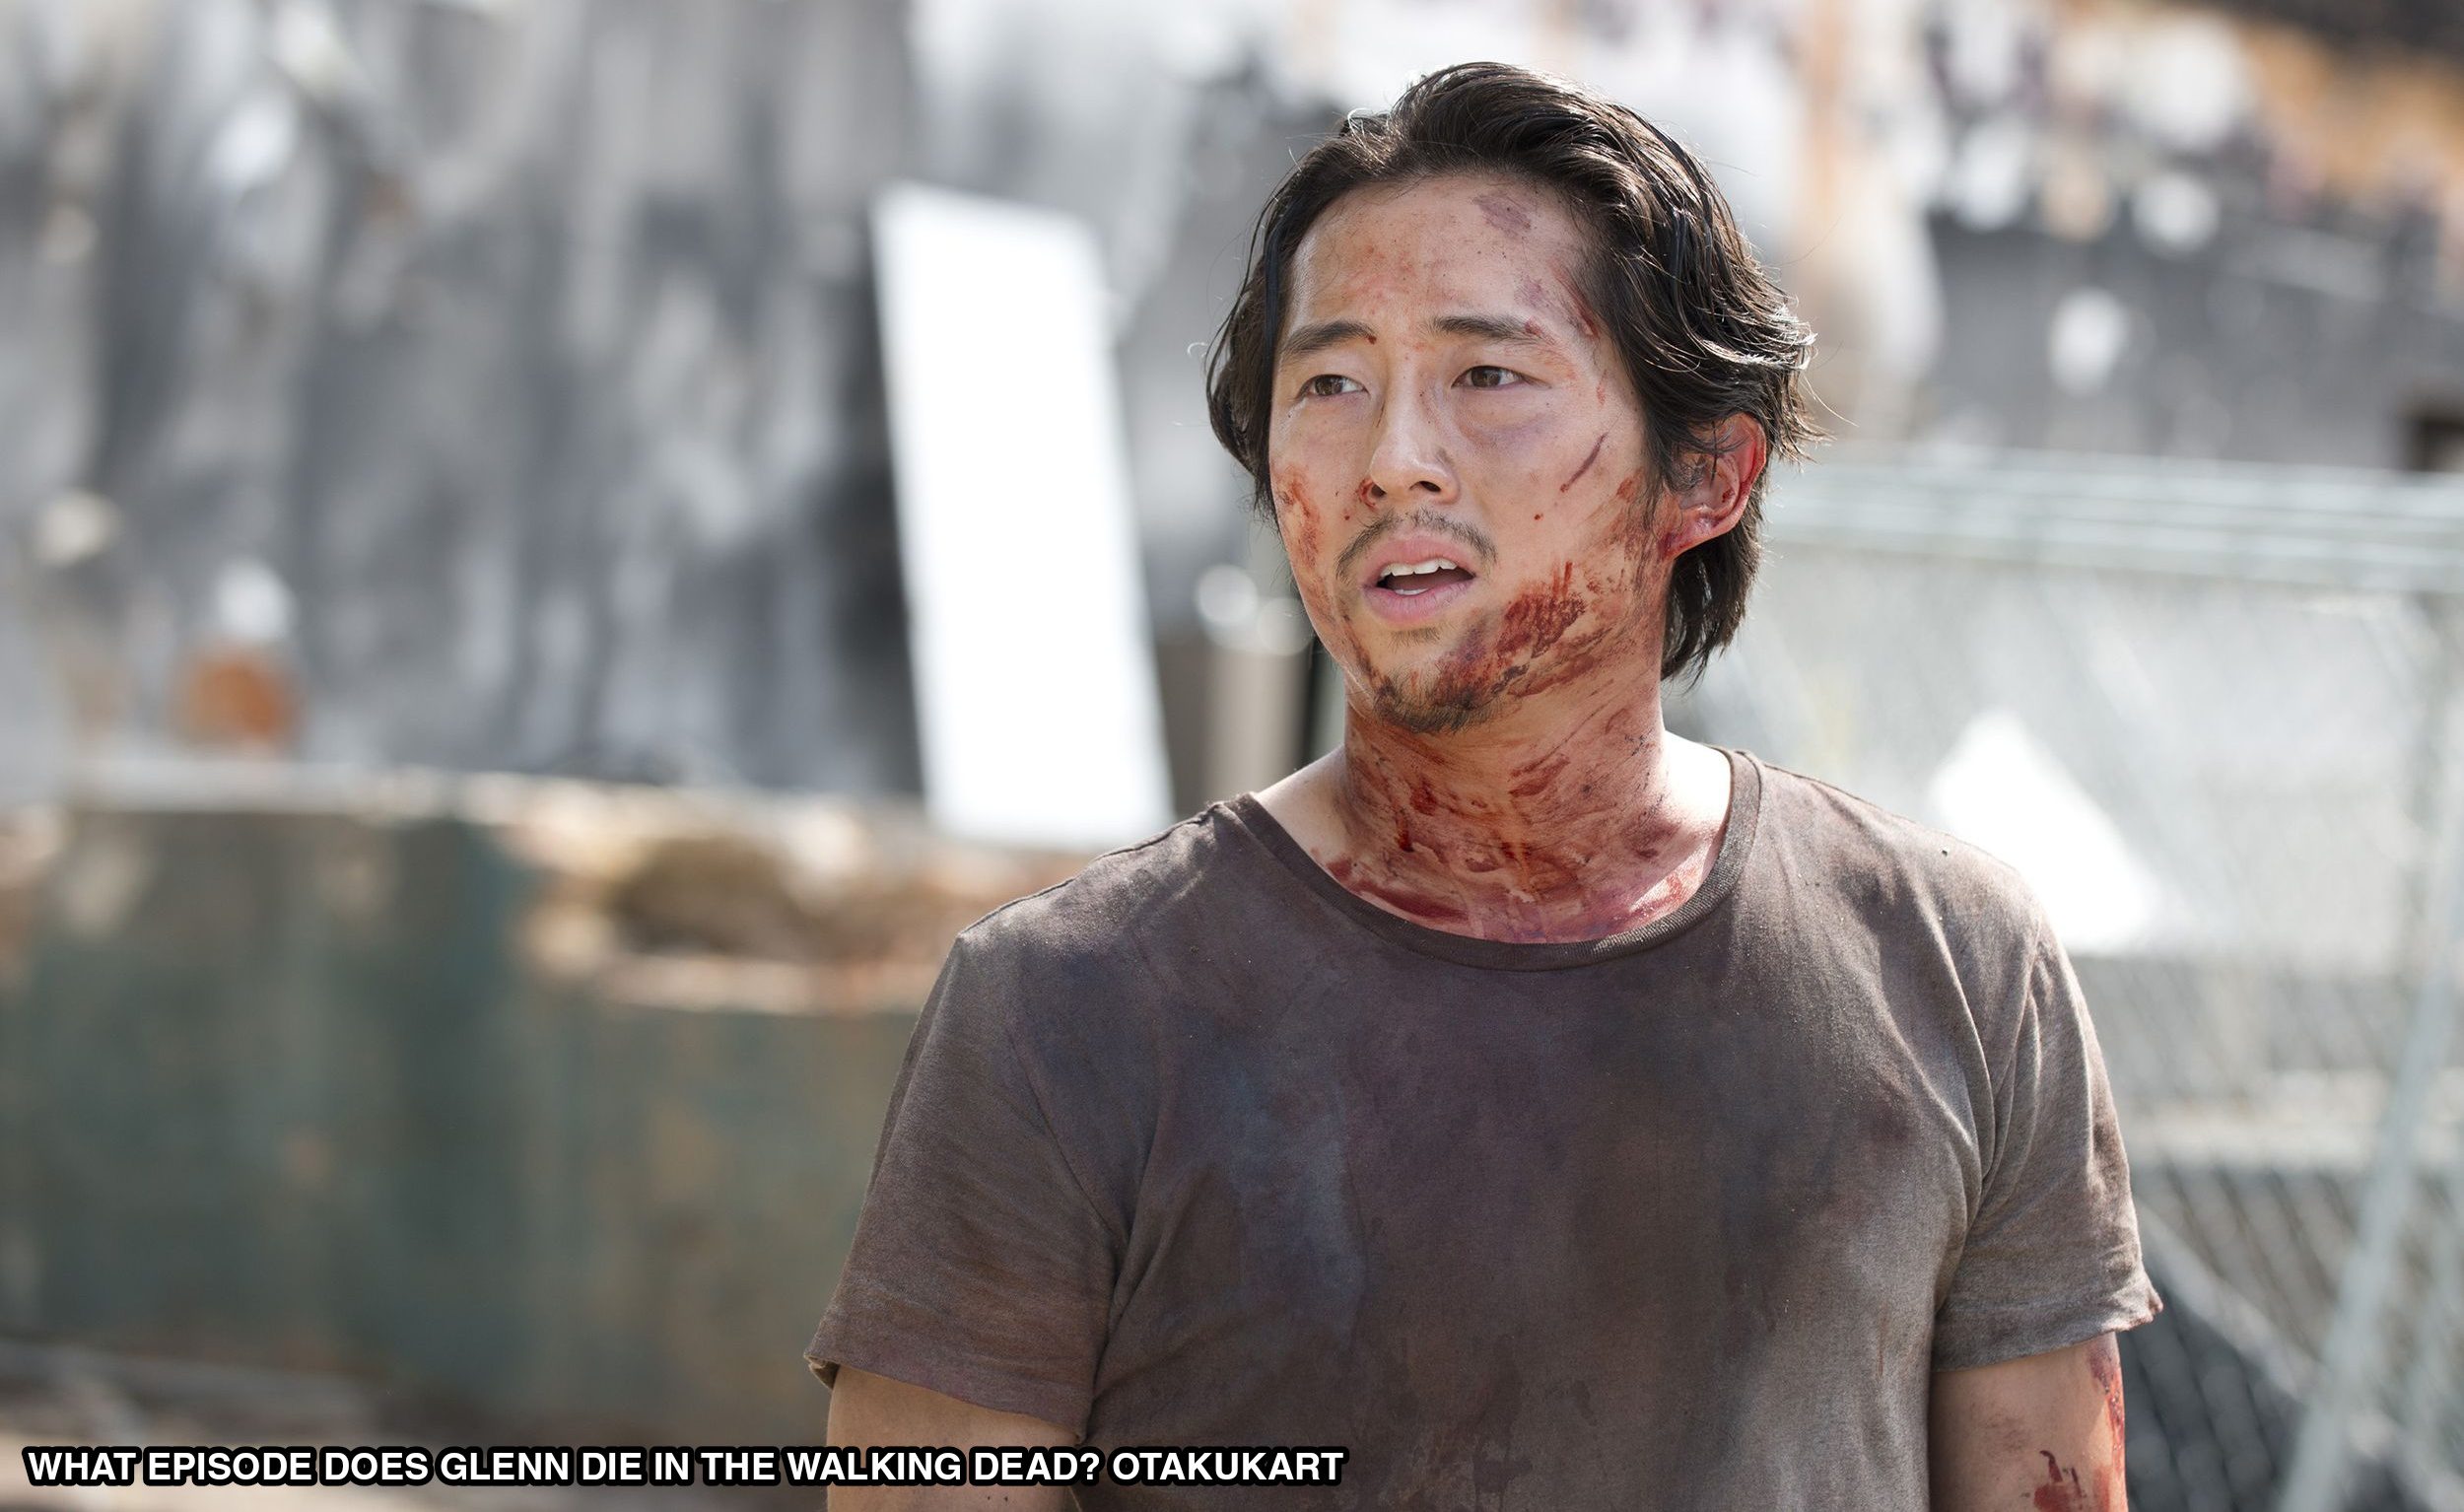 What Episode Does Glenn Die In The Walking Dead?